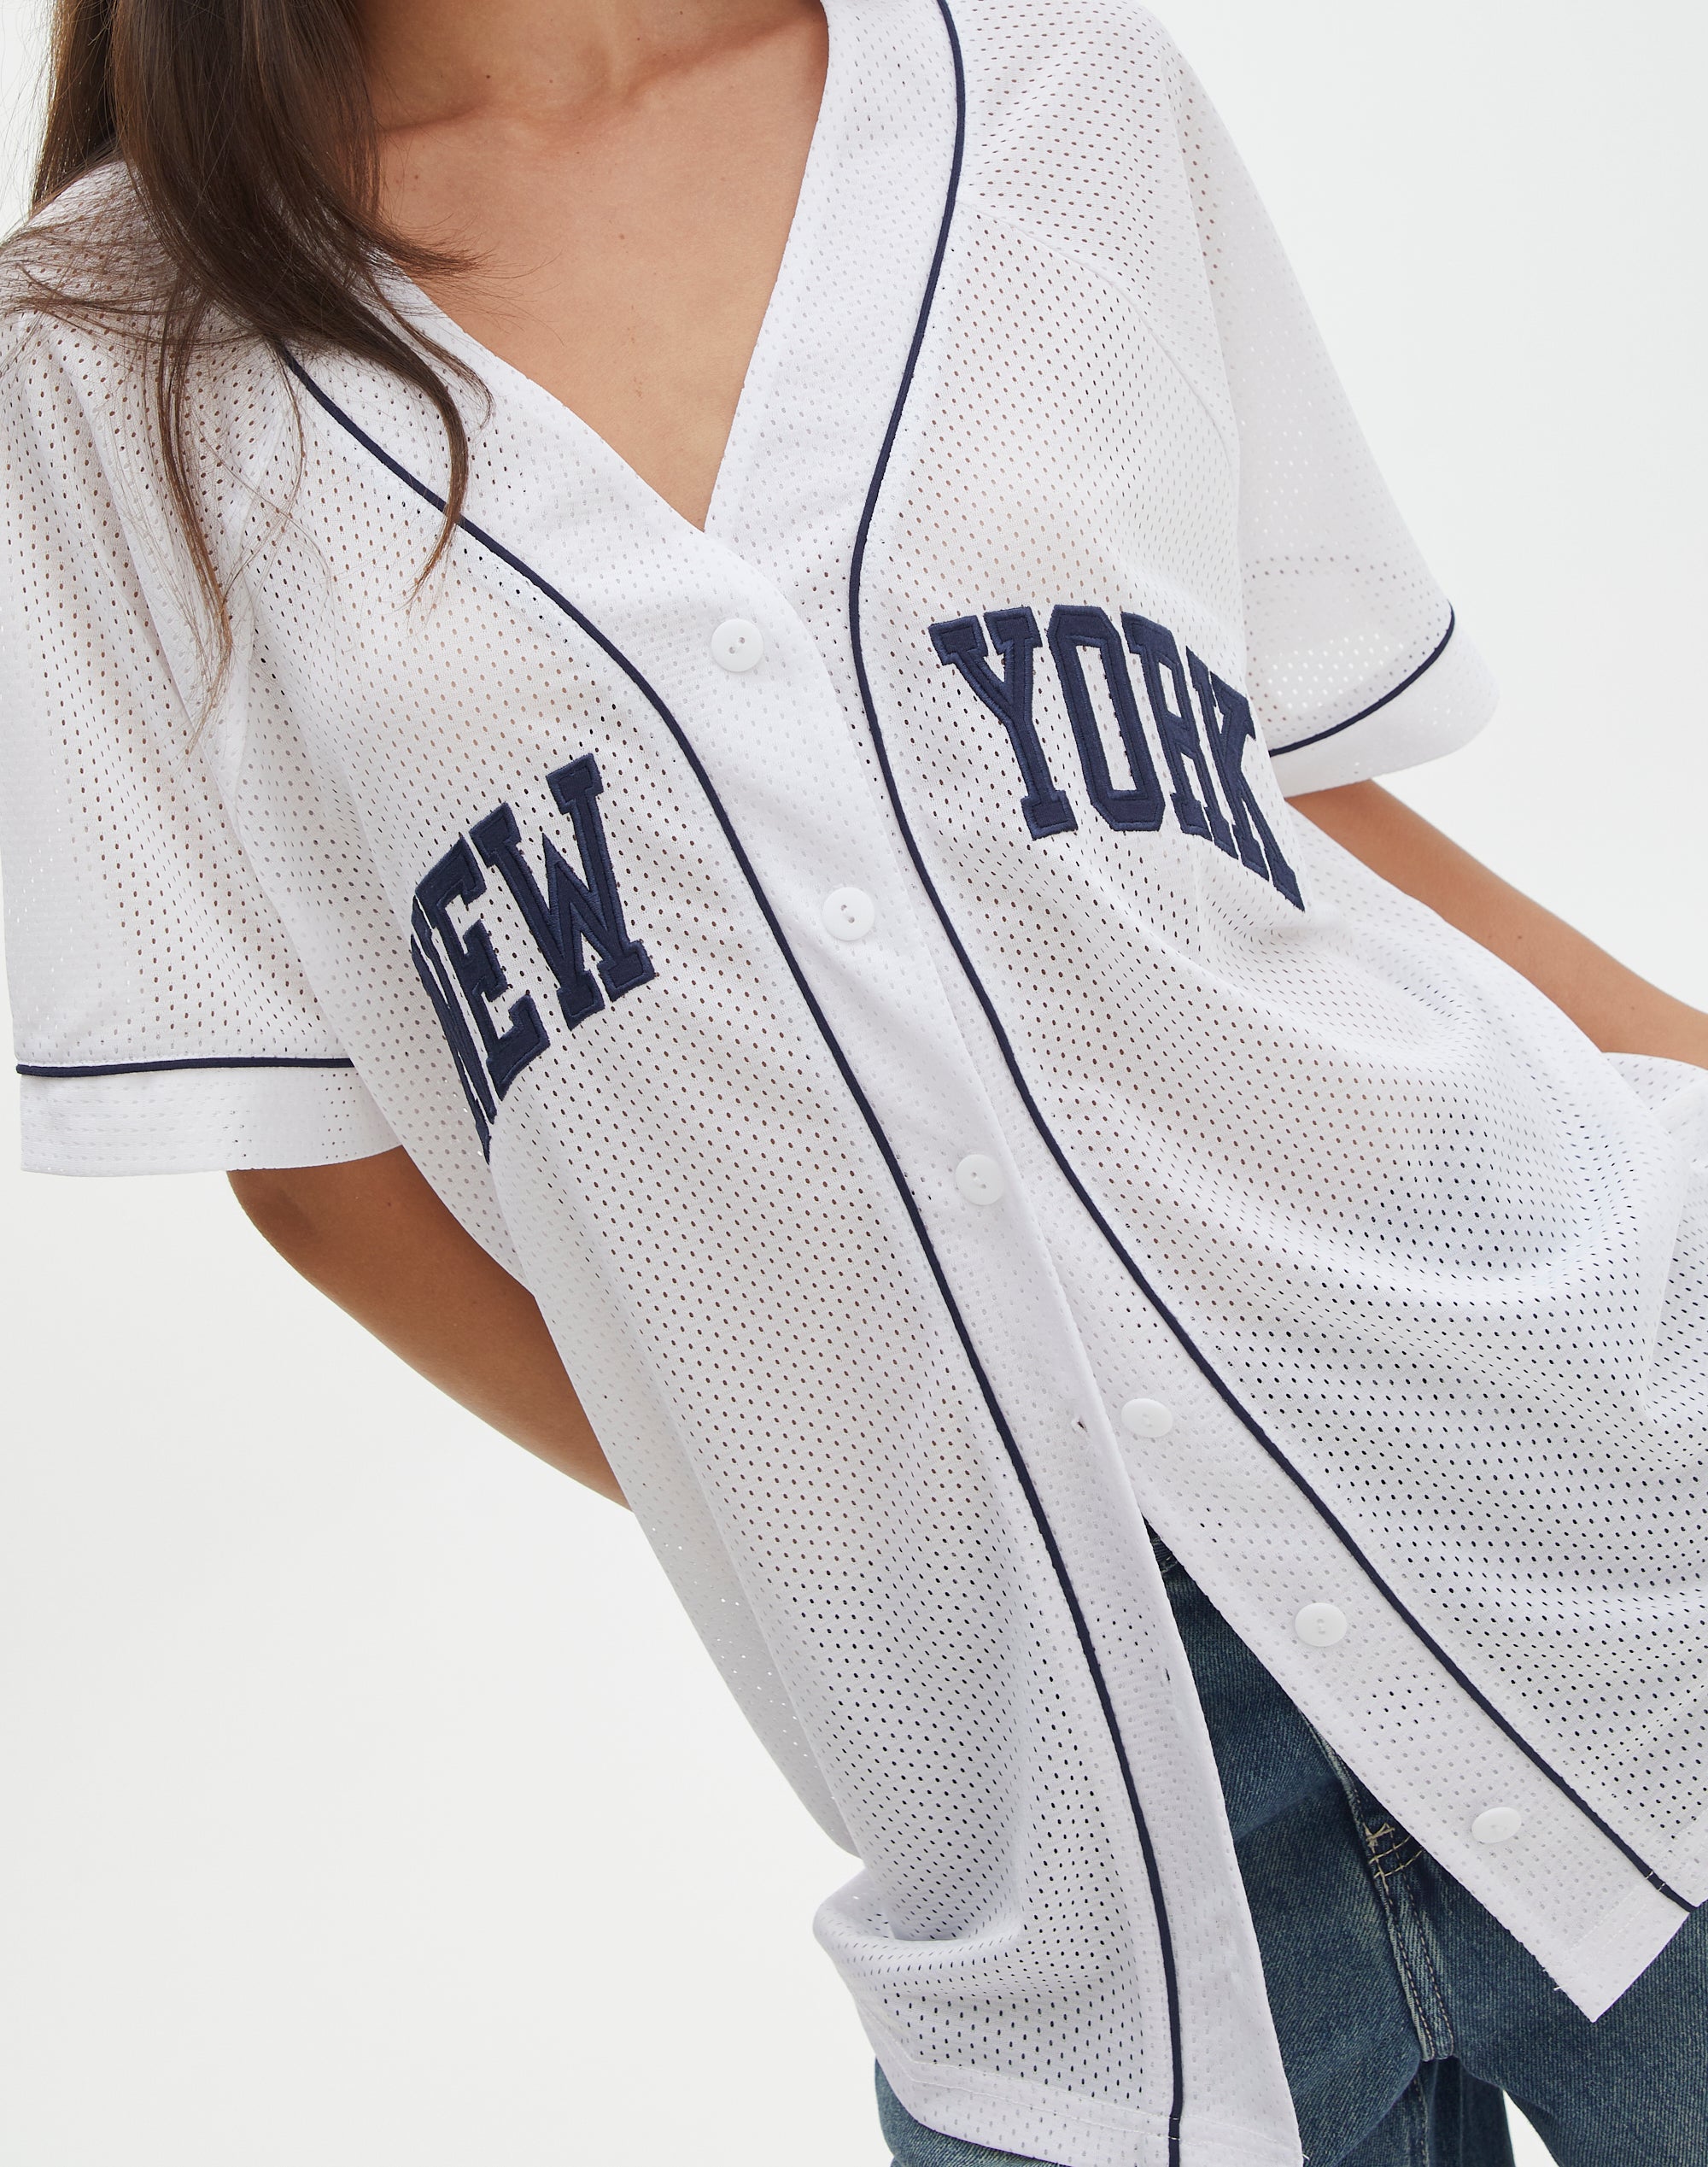 New York Yankees Shirt Women -  Australia